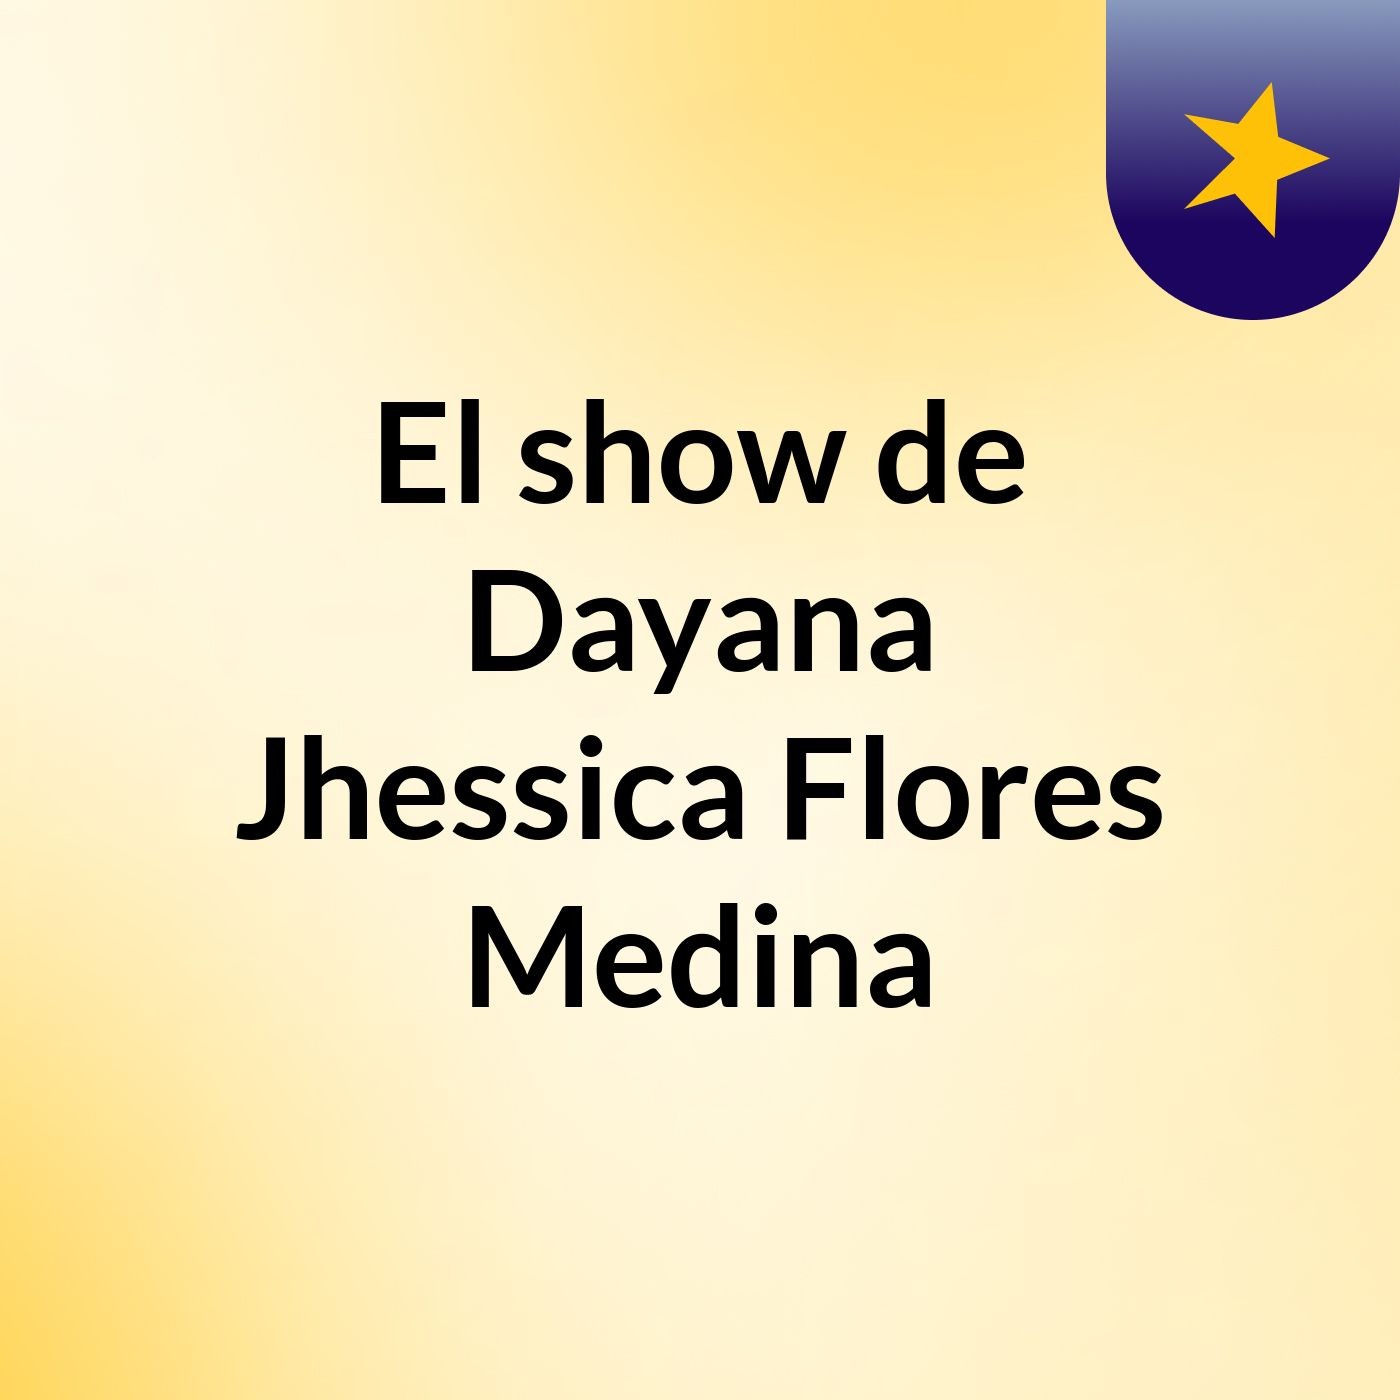 El show de Dayana Jhessica Flores Medina